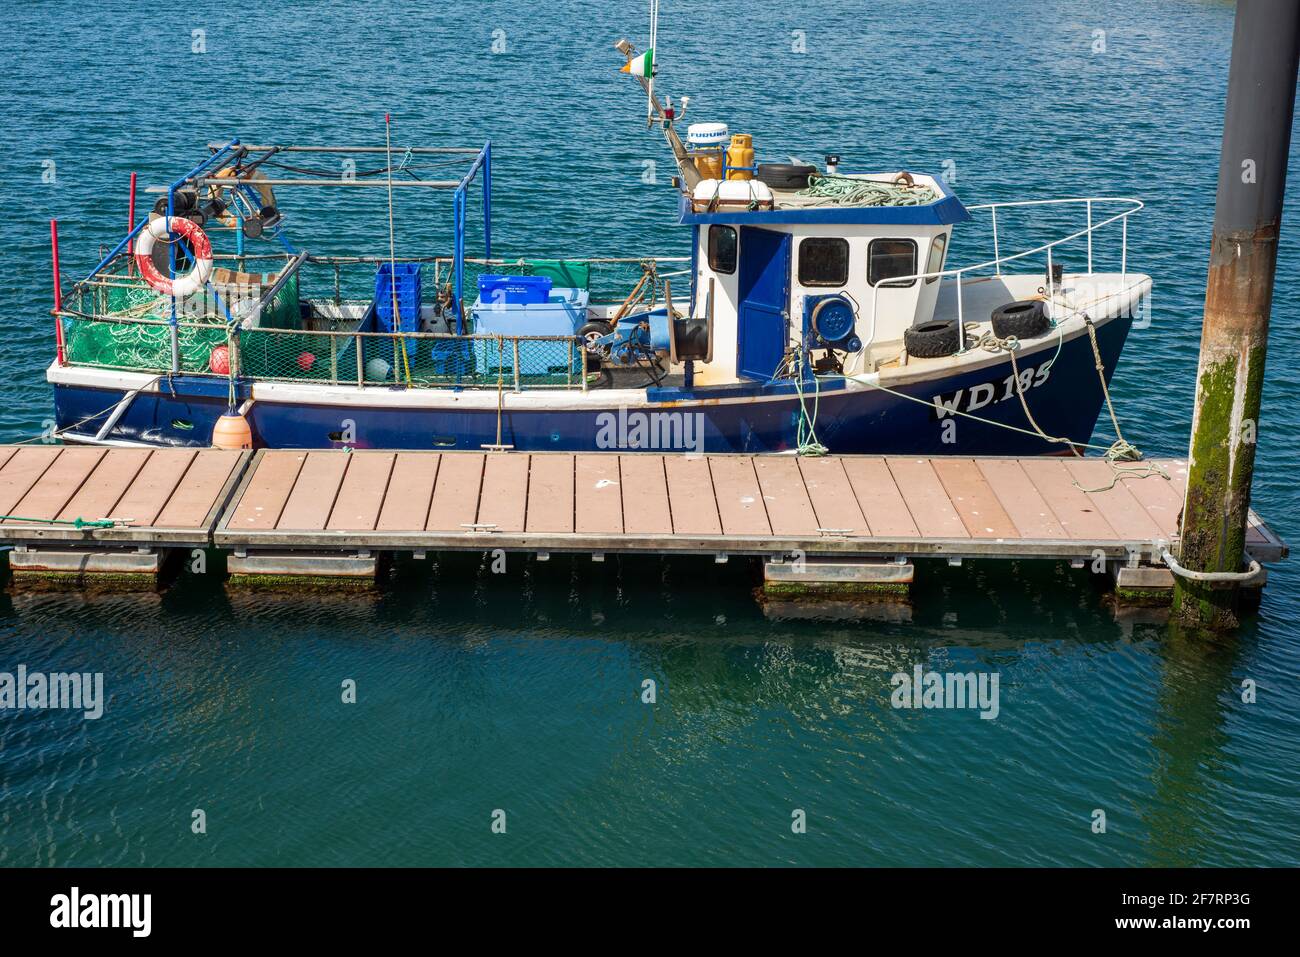 Imbarcazione da pesca blu con bandiera irlandese ormeggiata nel porto e porto turistico di Dingle, contea di Kerry, Irlanda Foto Stock